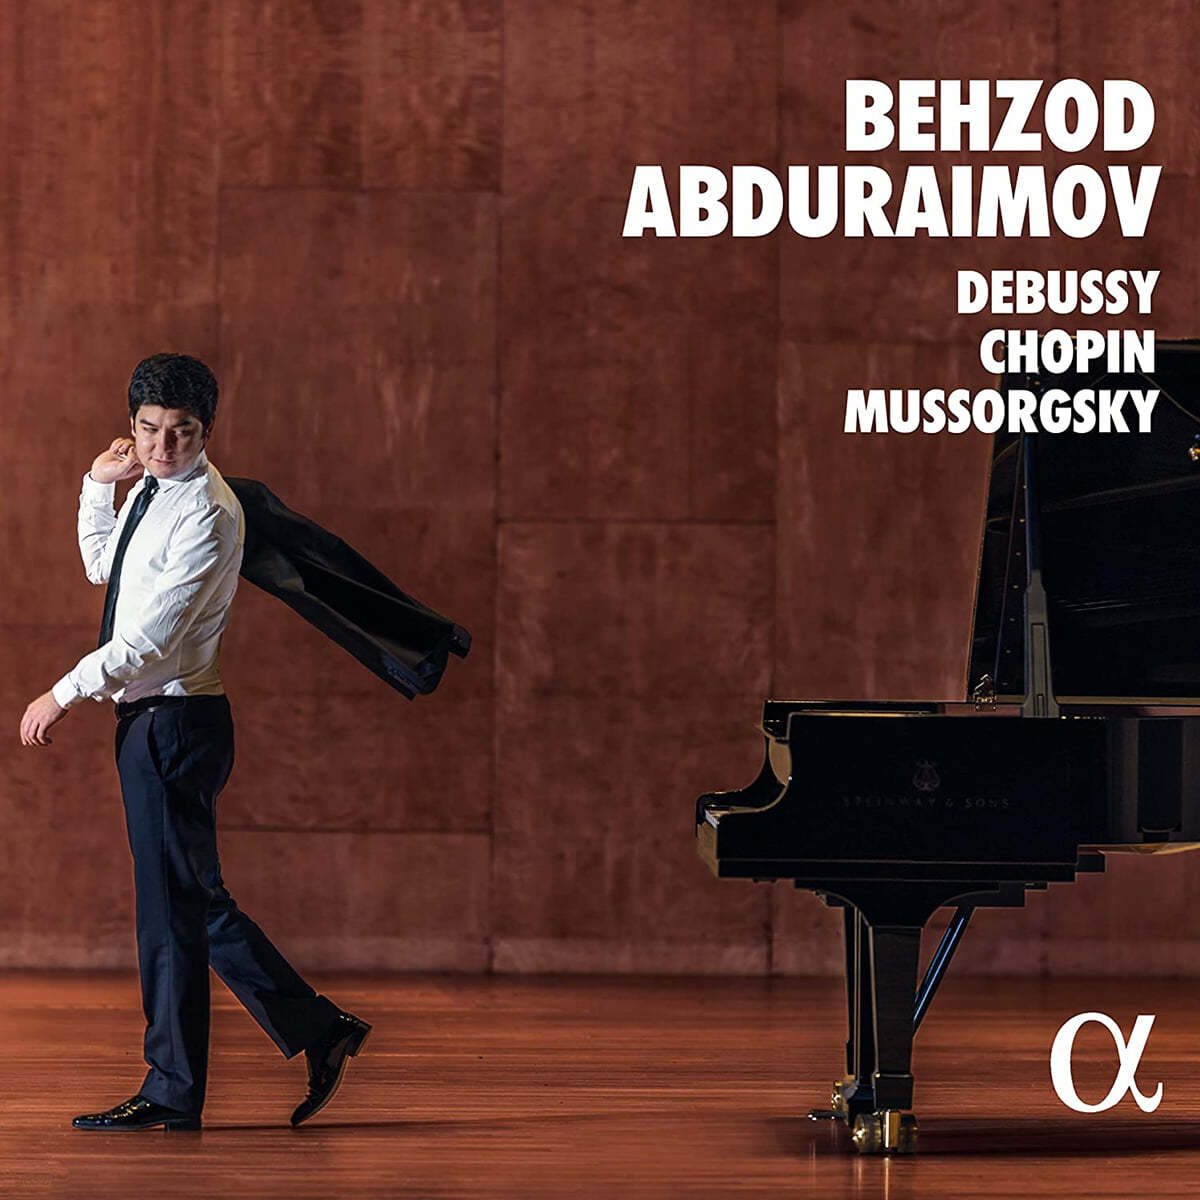 Behzod Abduraimov 쇼팽: 전주곡 / 무소르그스키: 전람회의 그림 / 드뷔시: 어린이 차지 - 베조드 압두라이모프 (Chopin / Mussorgsky / Debussy) 